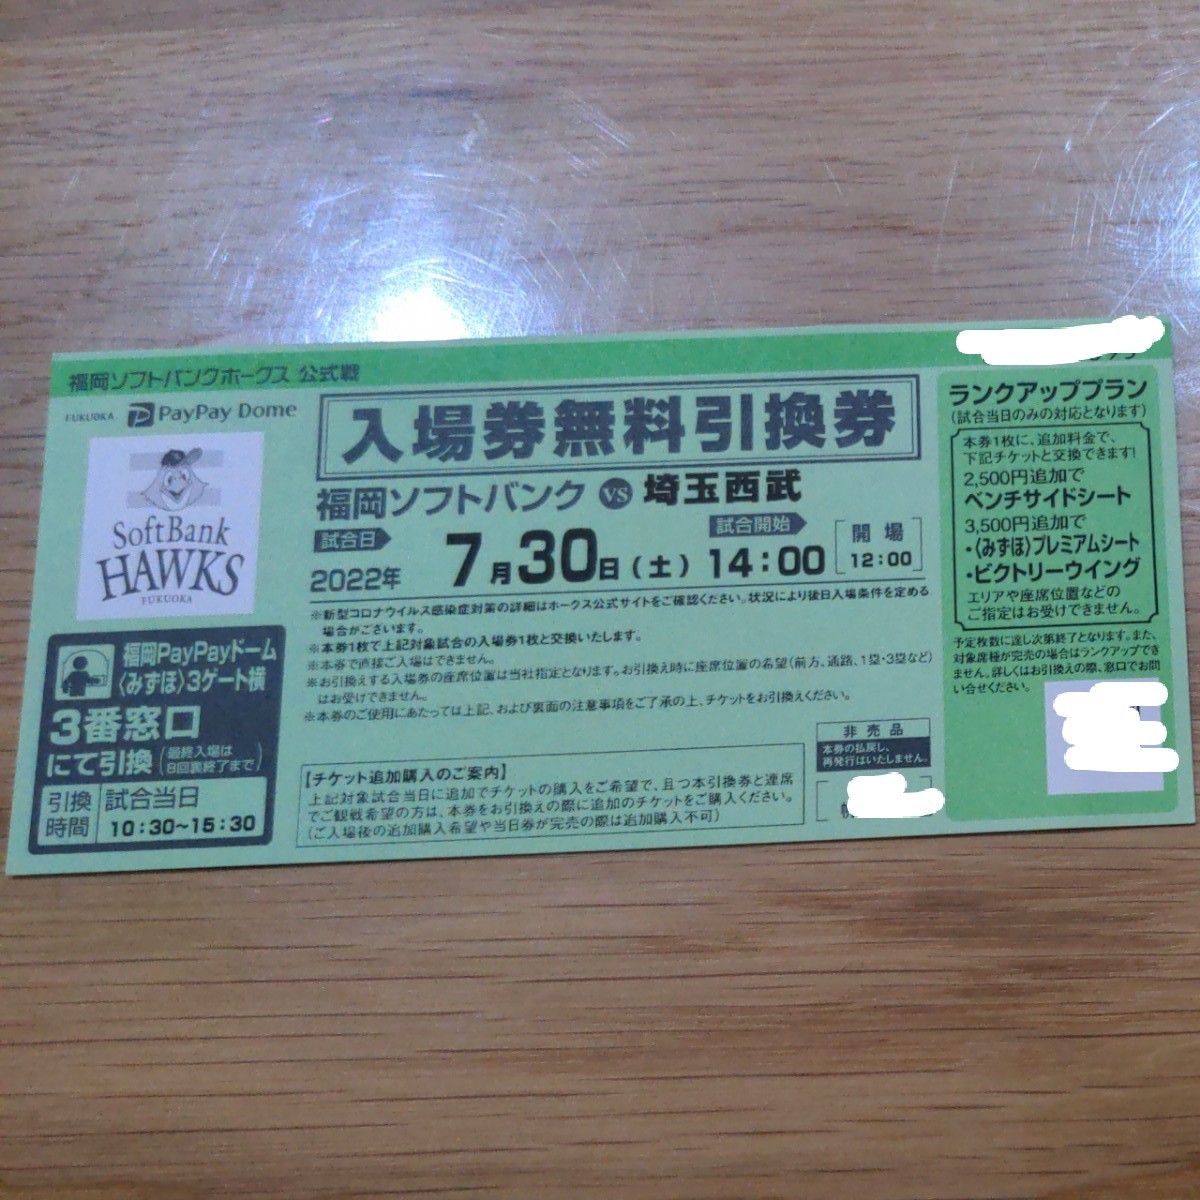 福岡ソフトバンクホークス 公式戦 入場券無料引換券 4枚 福岡